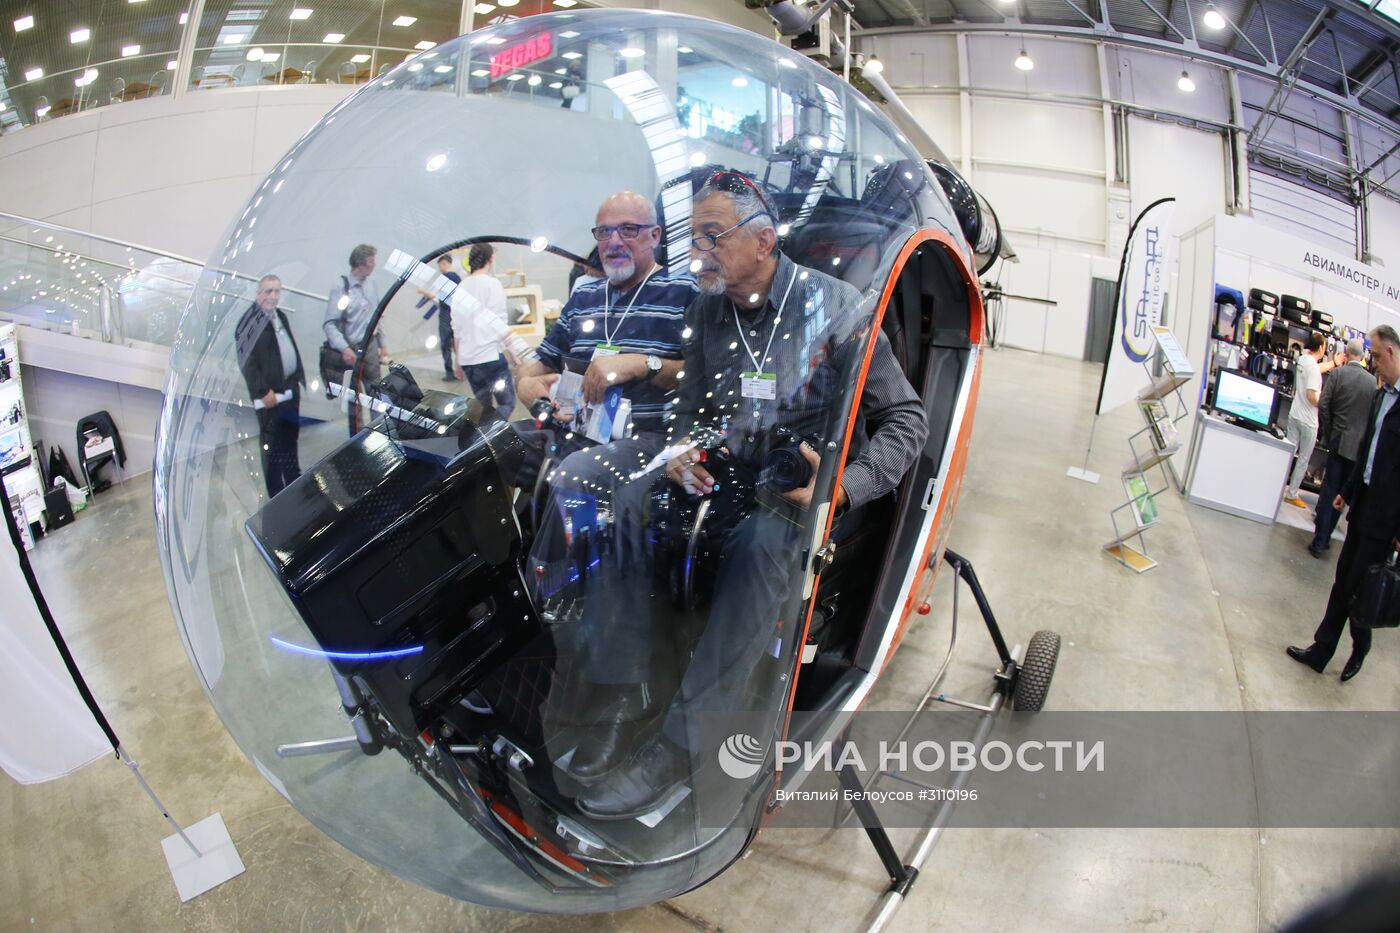 X международная выставка вертолетной индустрии "HeliRussia"